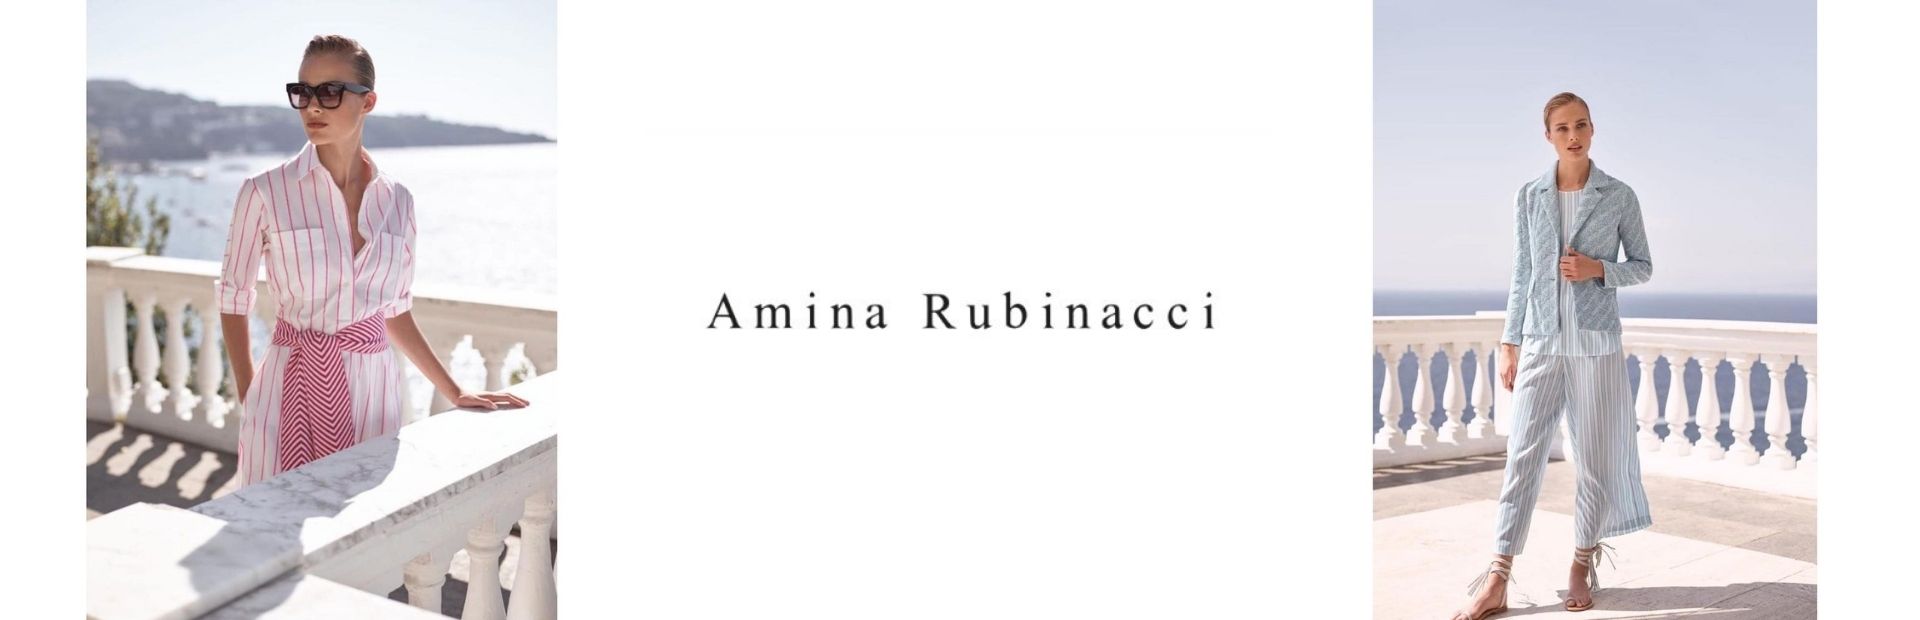 Amina Rubinacci - Le migliori firme solo su Sicilia Outlet Village